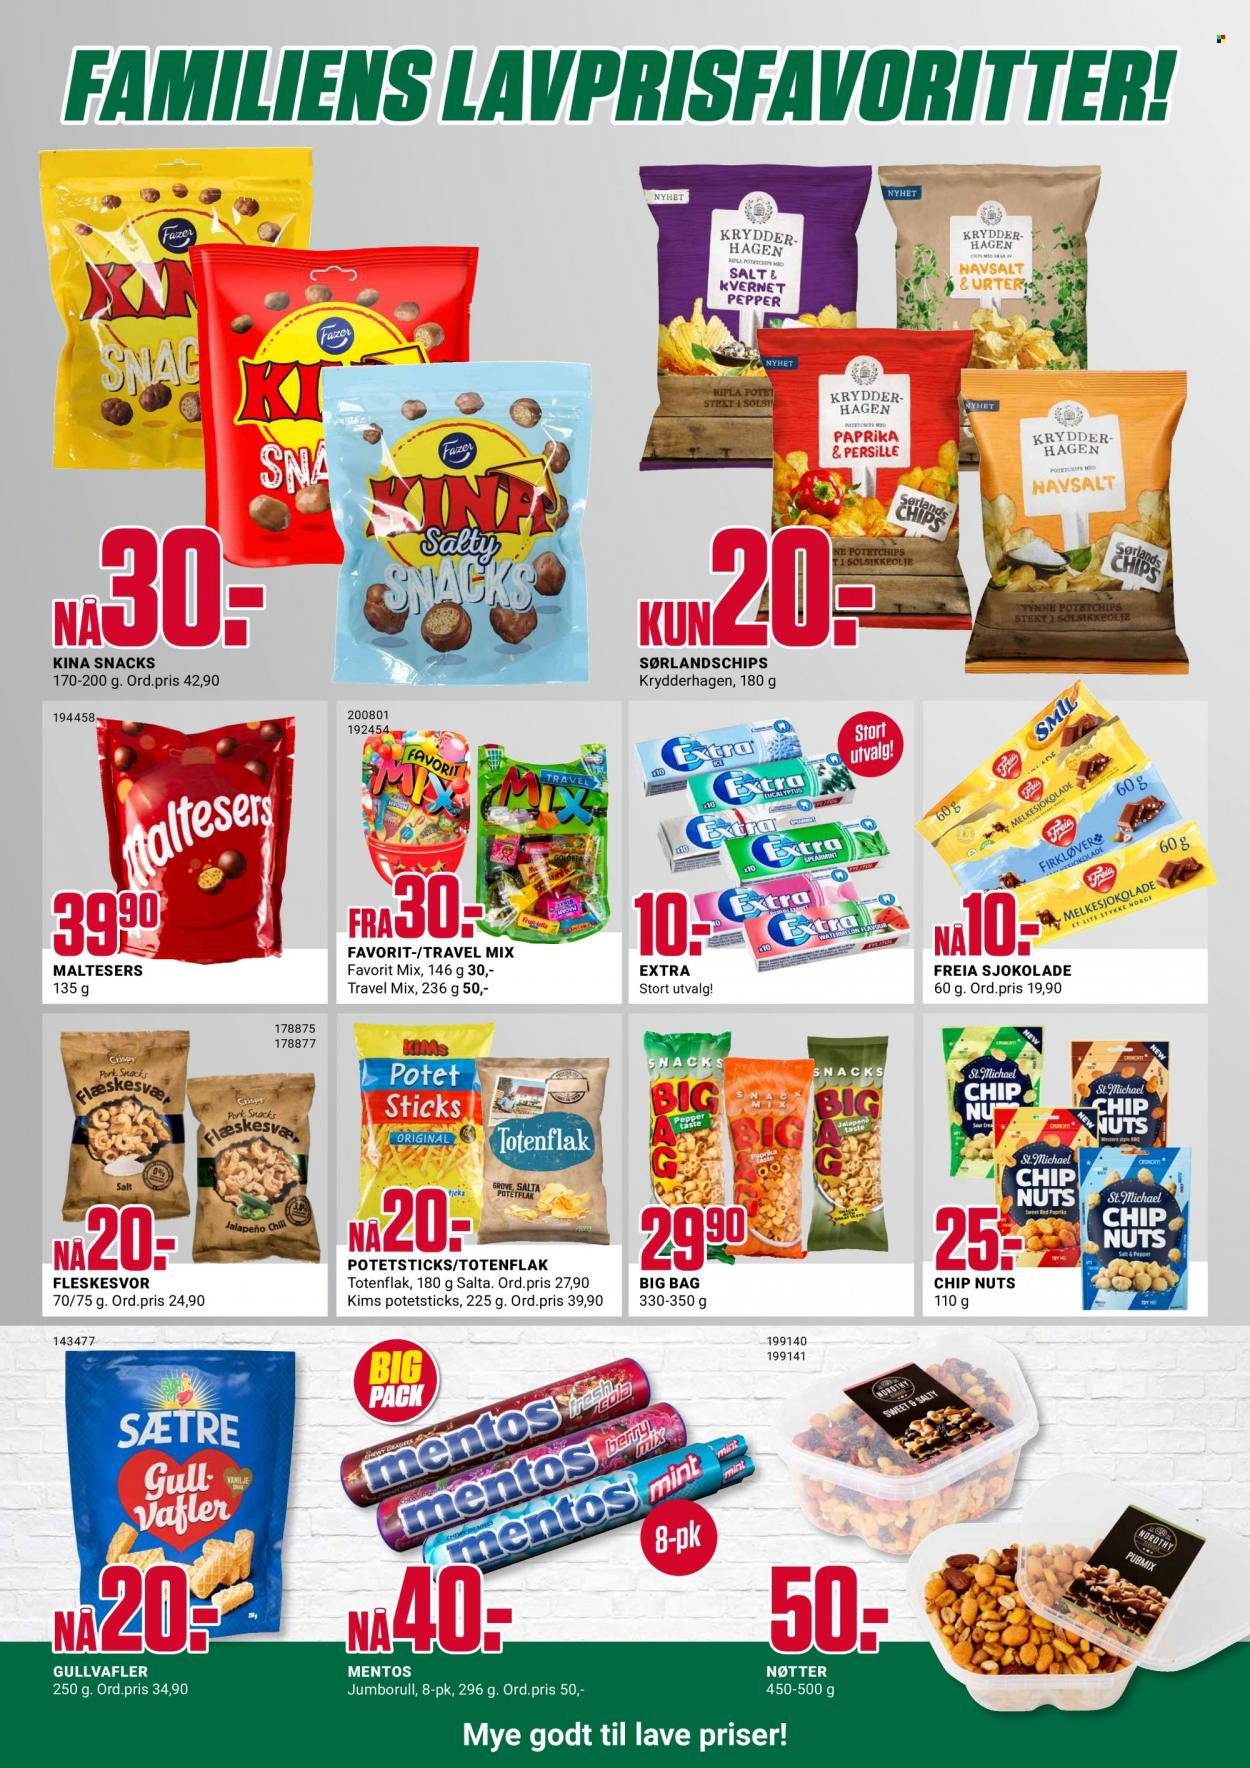 thumbnail - Kundeavis Europris - 20.9.2021 - 25.9.2021 - Produkter fra tilbudsaviser - melkesjokolade, sjokolade, Freia, chips, potetchips, nøtter. Side 4.